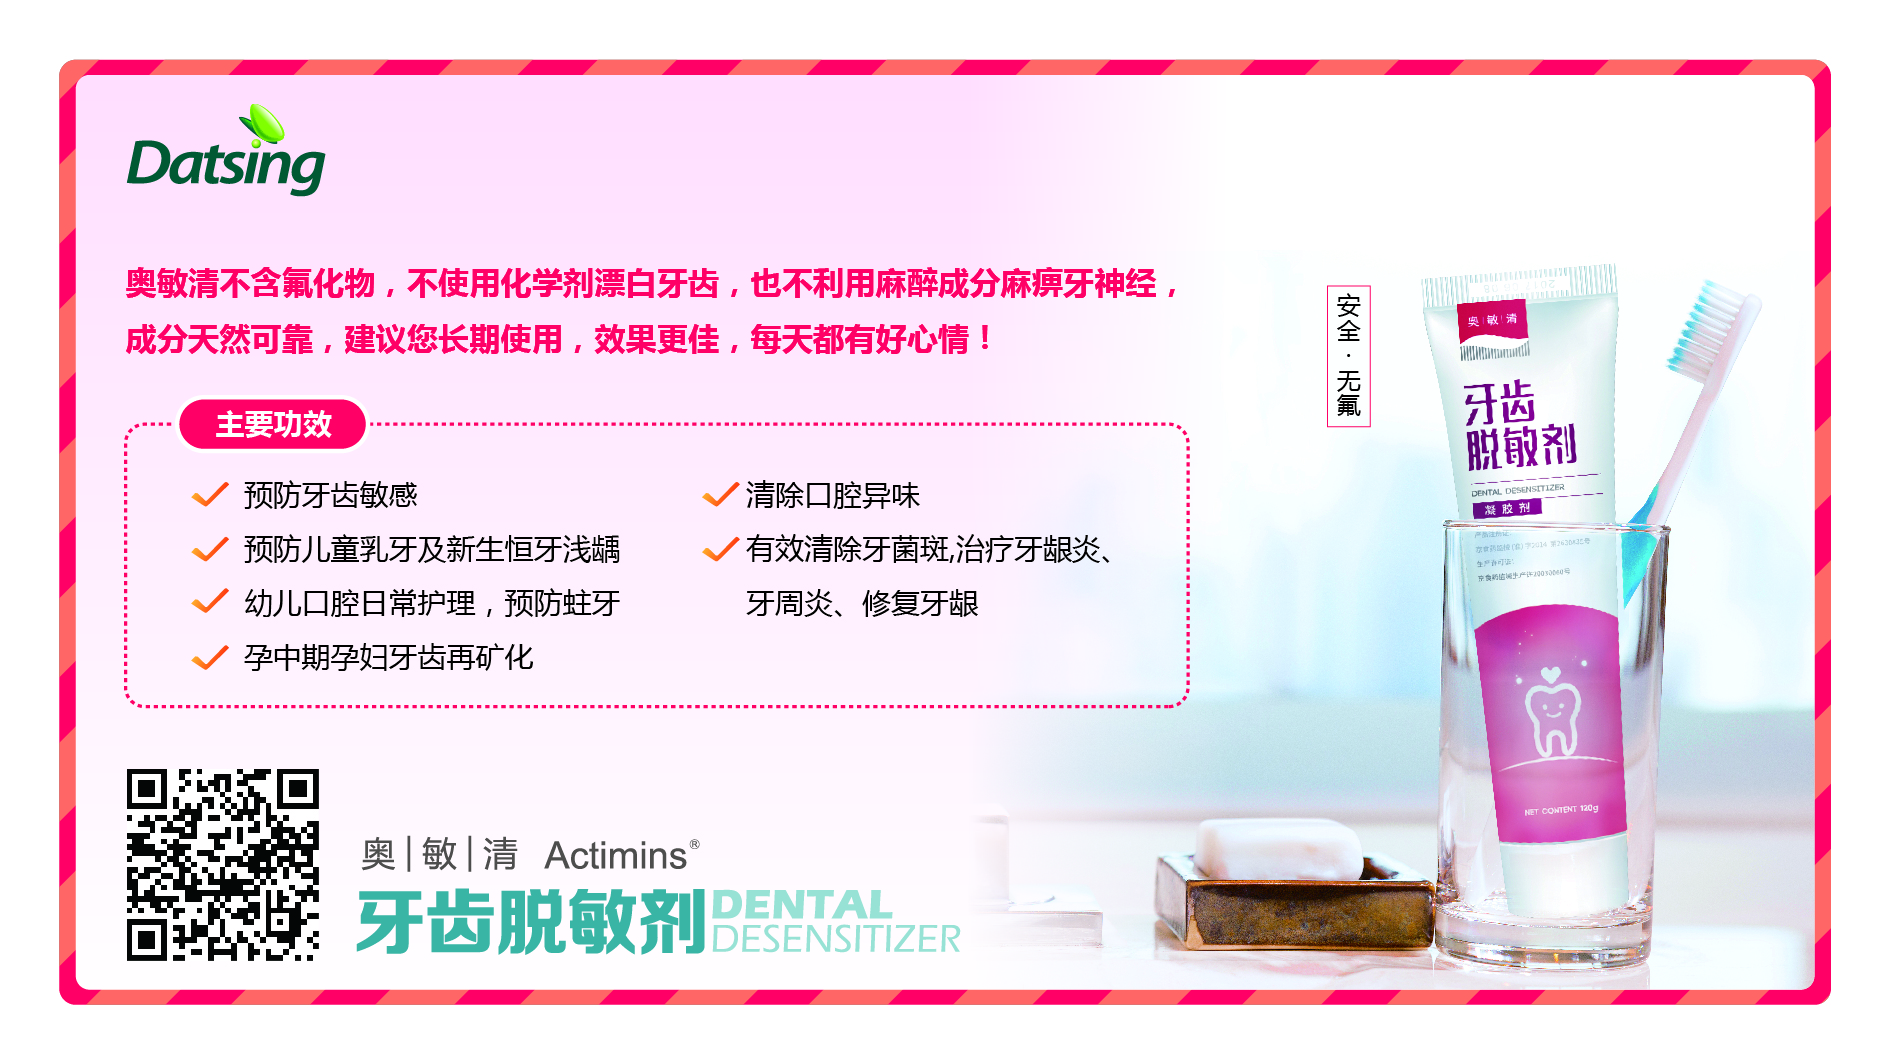 我们推荐治牙周炎贵吗_ 牙周炎如何治疗相关-北京大清西格科技有限公司